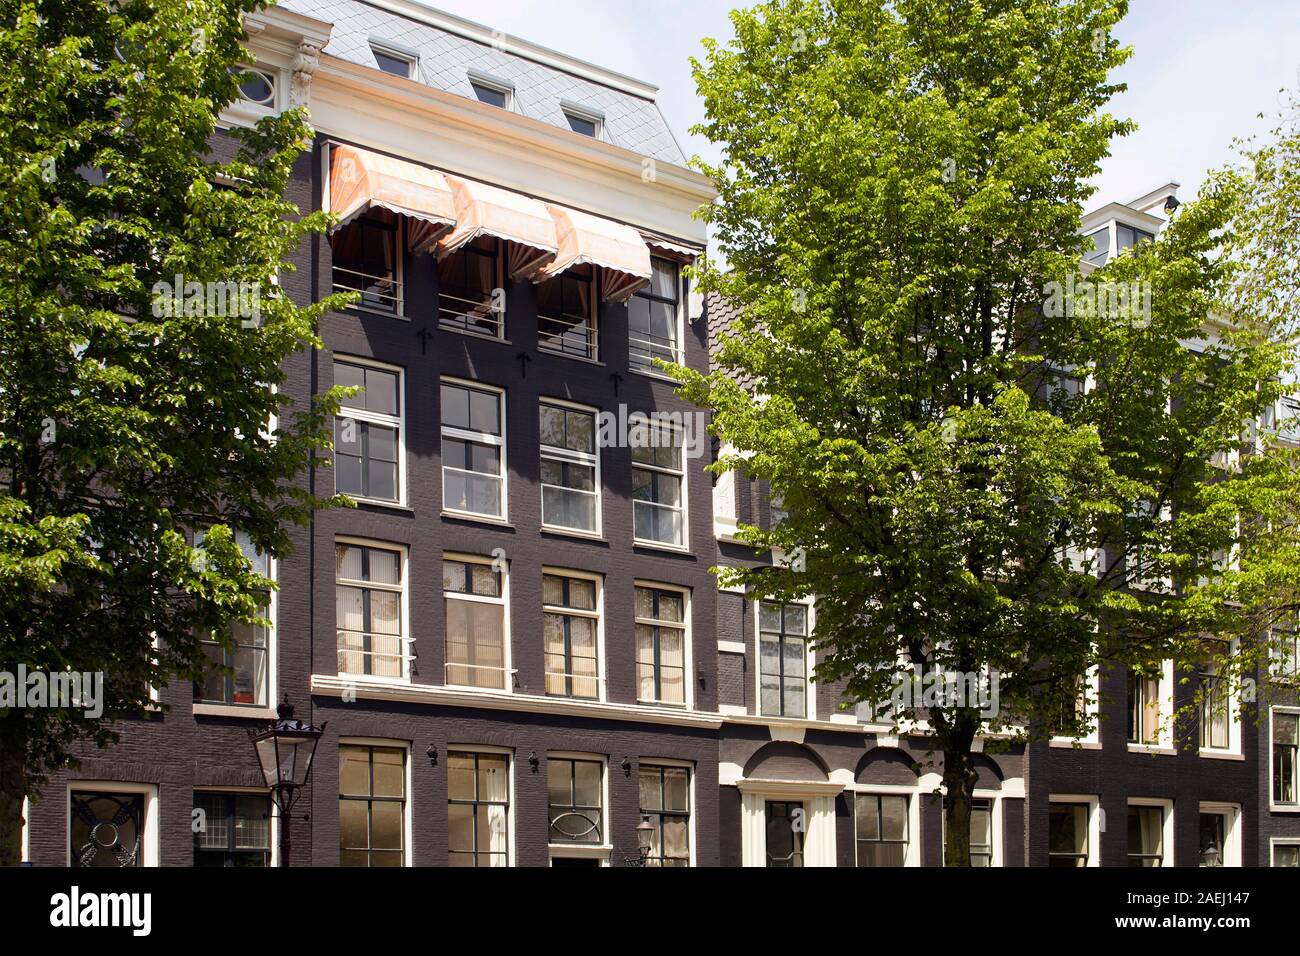 Voir l'historique des bâtiments typiques et traditionnelles, montrant un style architectural hollandais et les arbres à Amsterdam. Il s'agit d'une journée ensoleillée. Banque D'Images